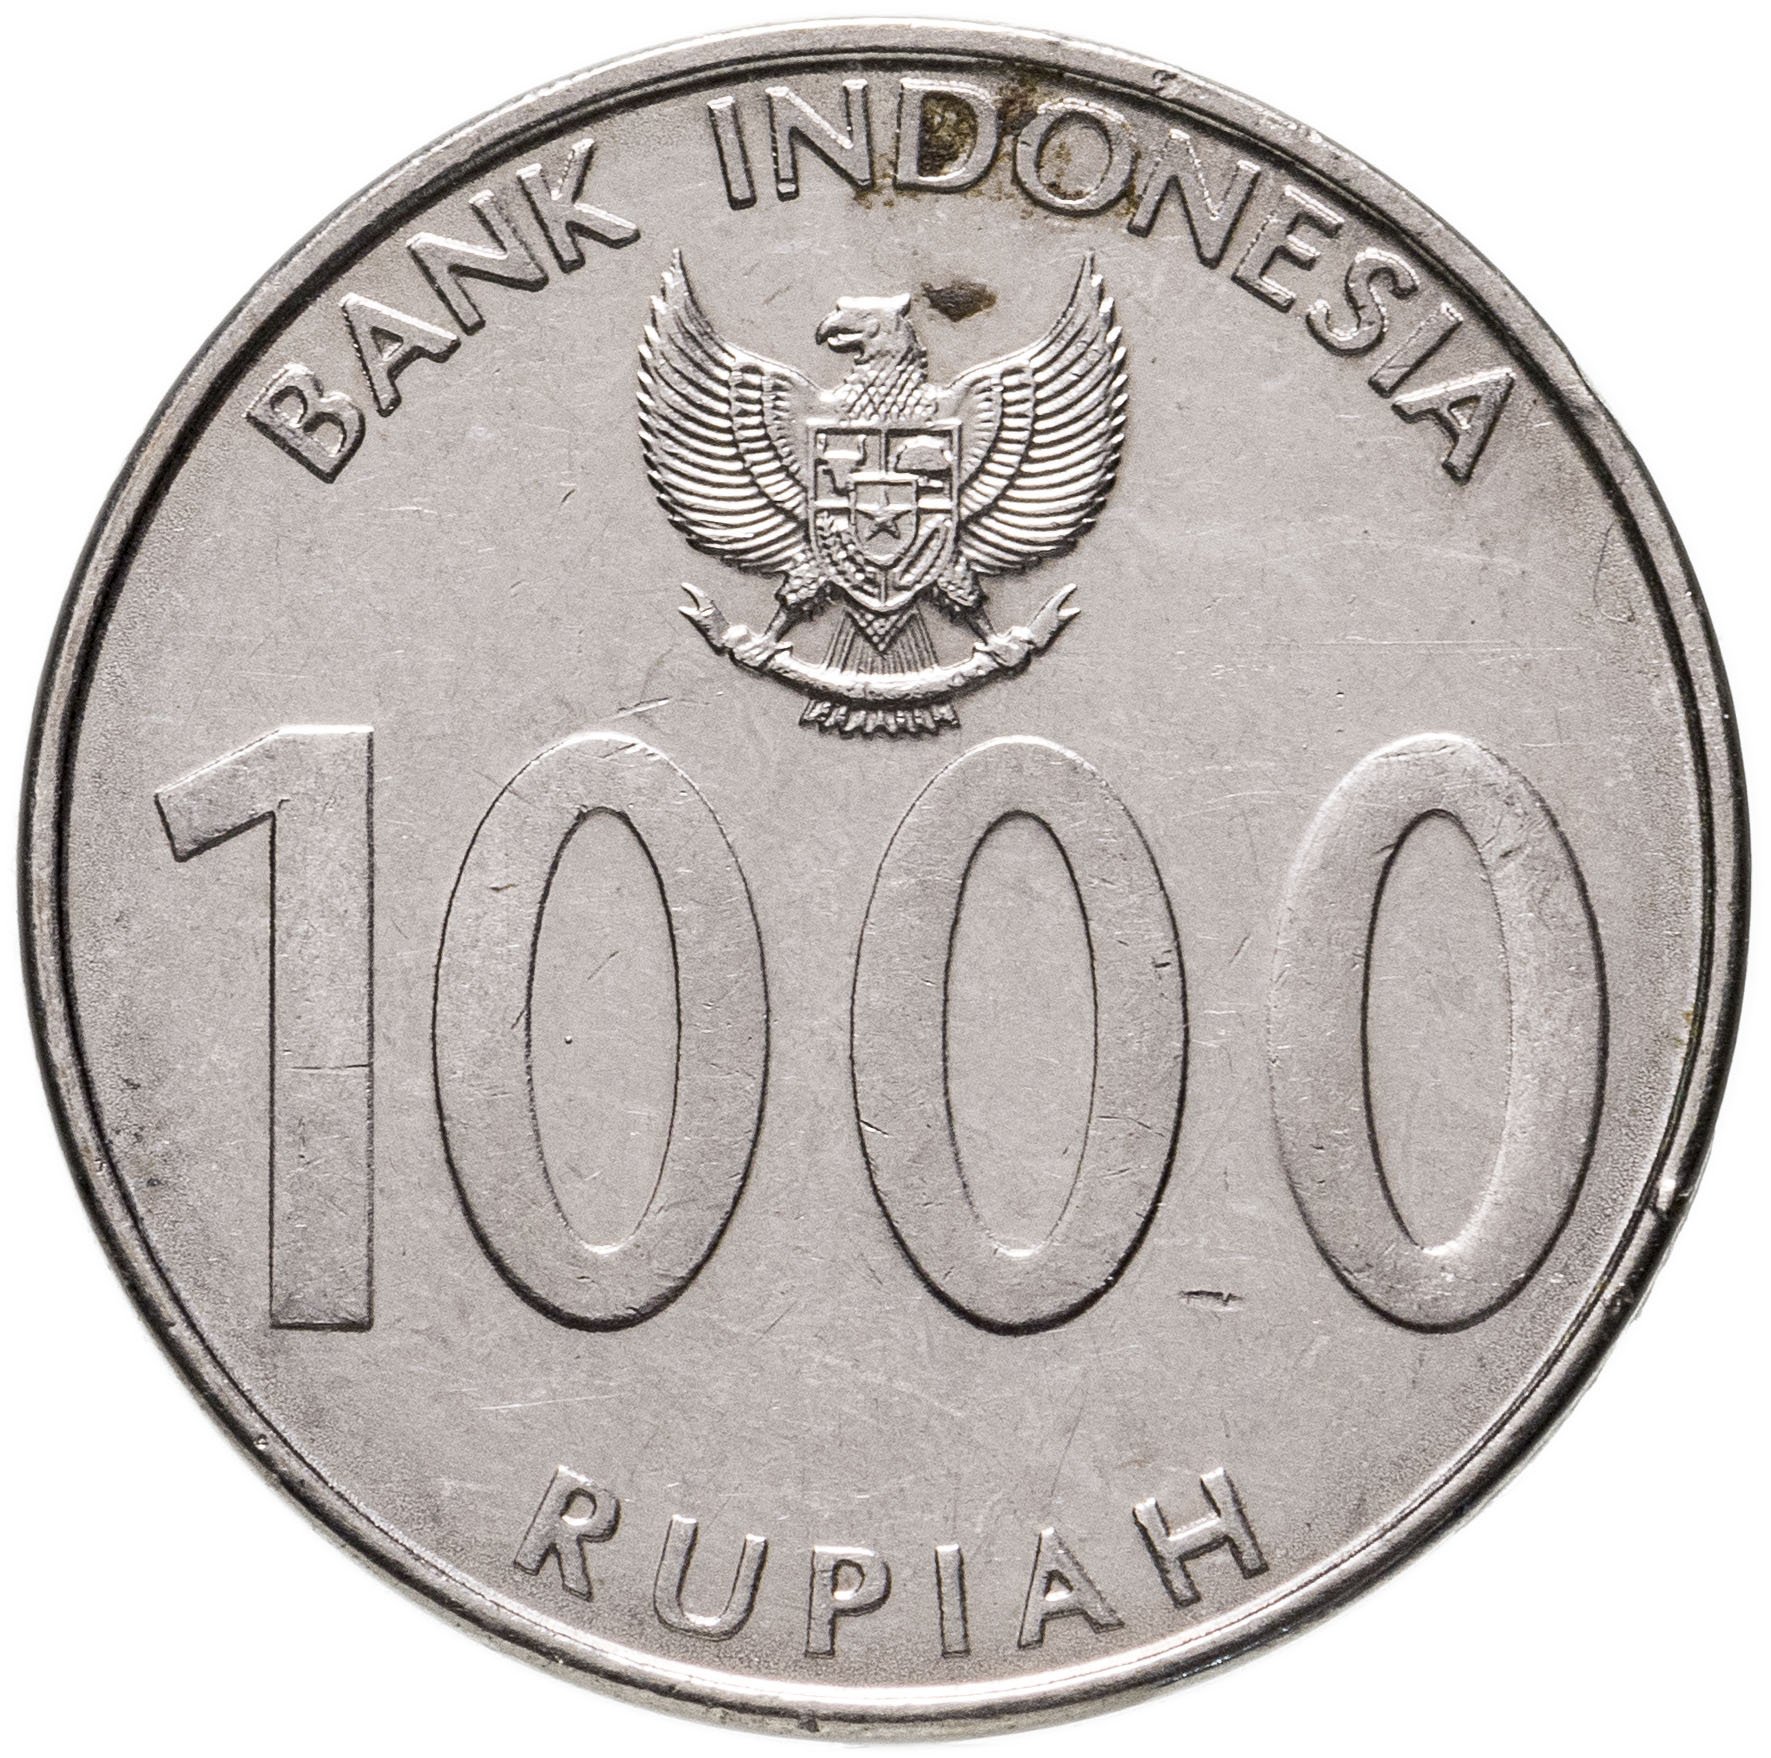 Млн рупий в рублях. 1000 Рупий Индонезия. 1000 Индонезийских рупий в рублях. Монета Индонезия 1000 рупий, 2016. Индонезийская валюта 1000 монетой.